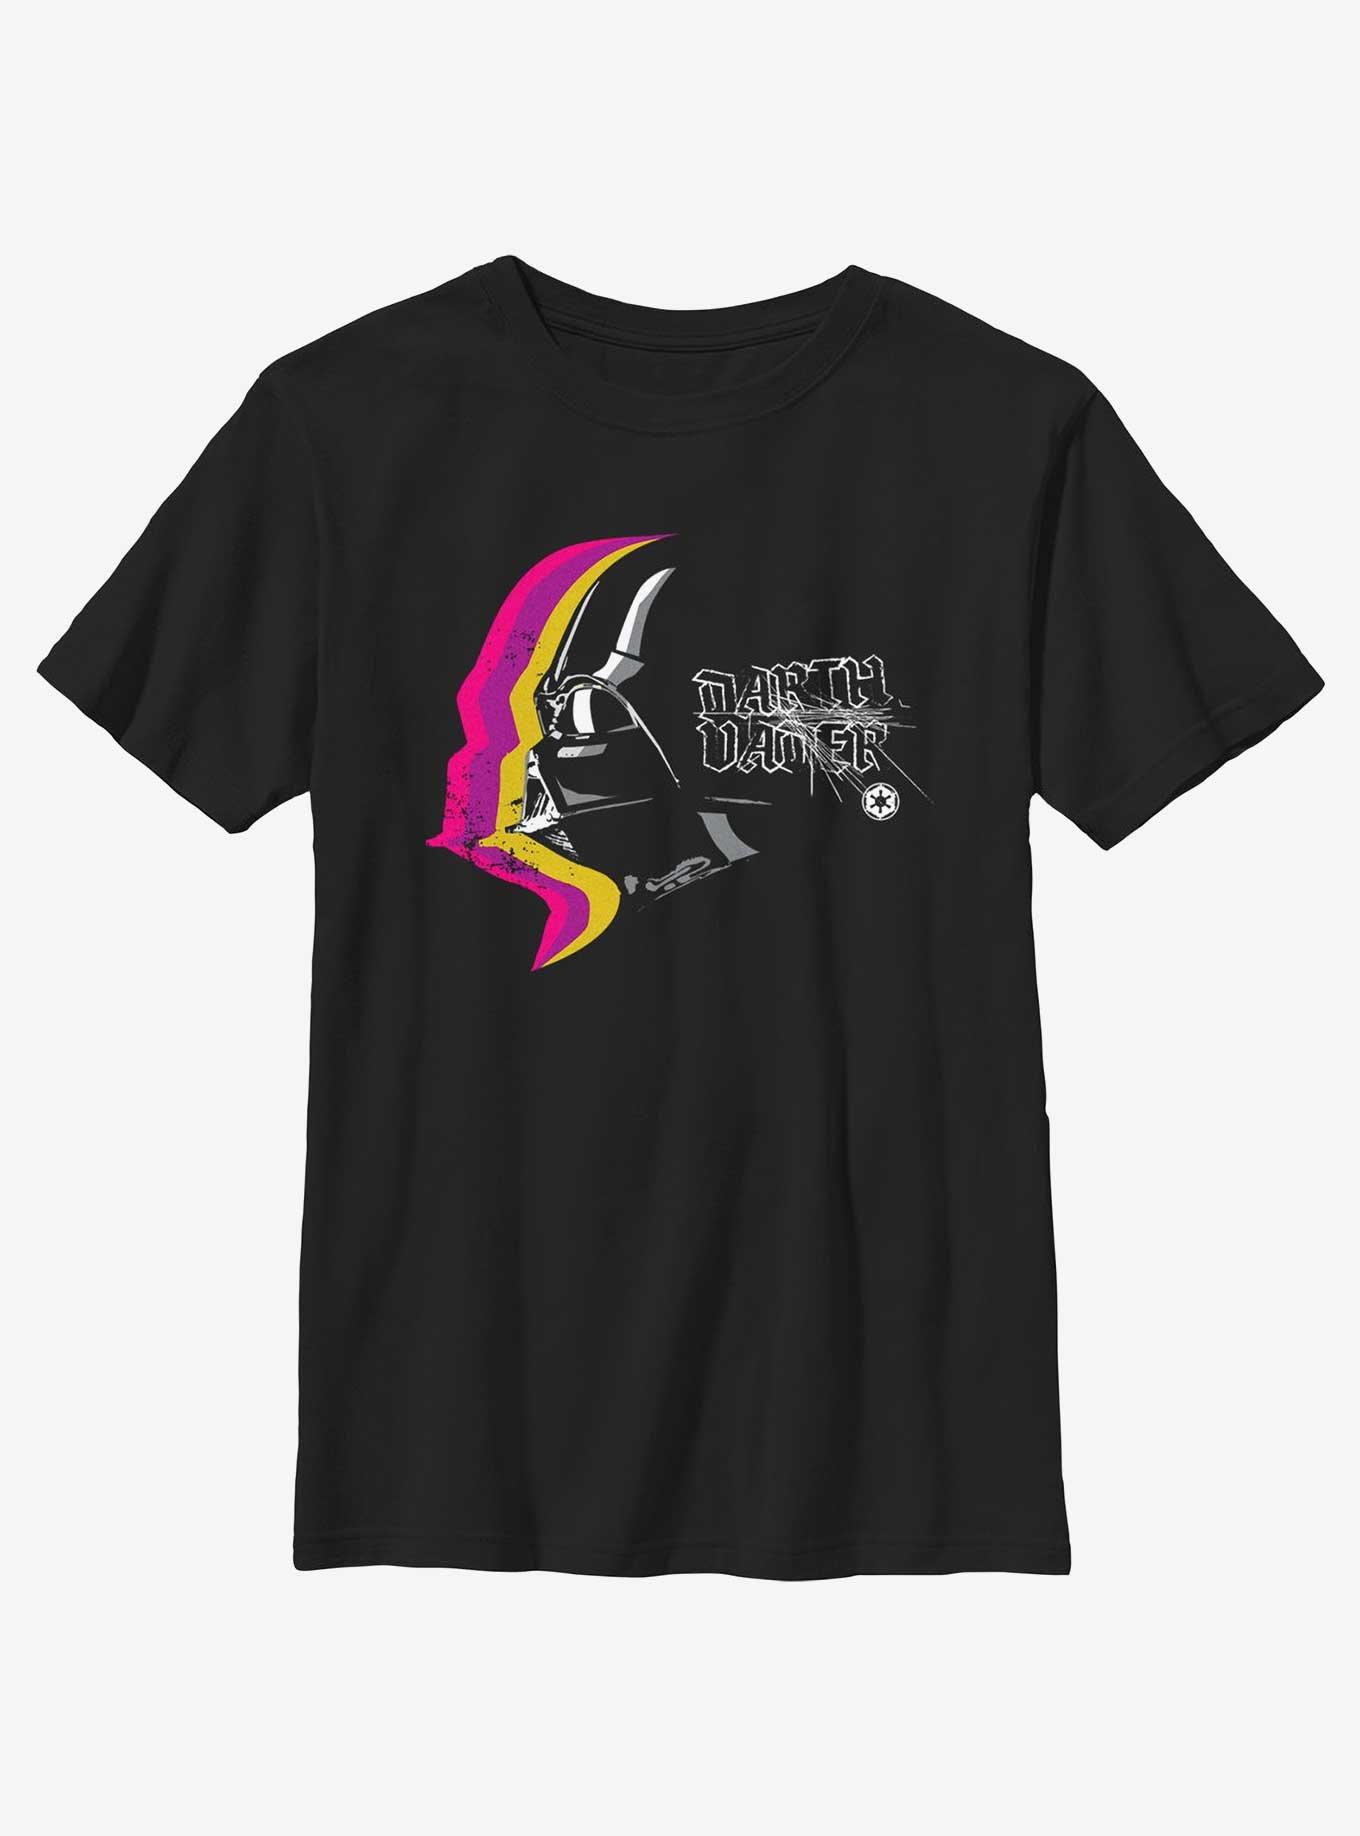 Star Wars Darth Vader Profile Youth T-Shirt, BLACK, hi-res